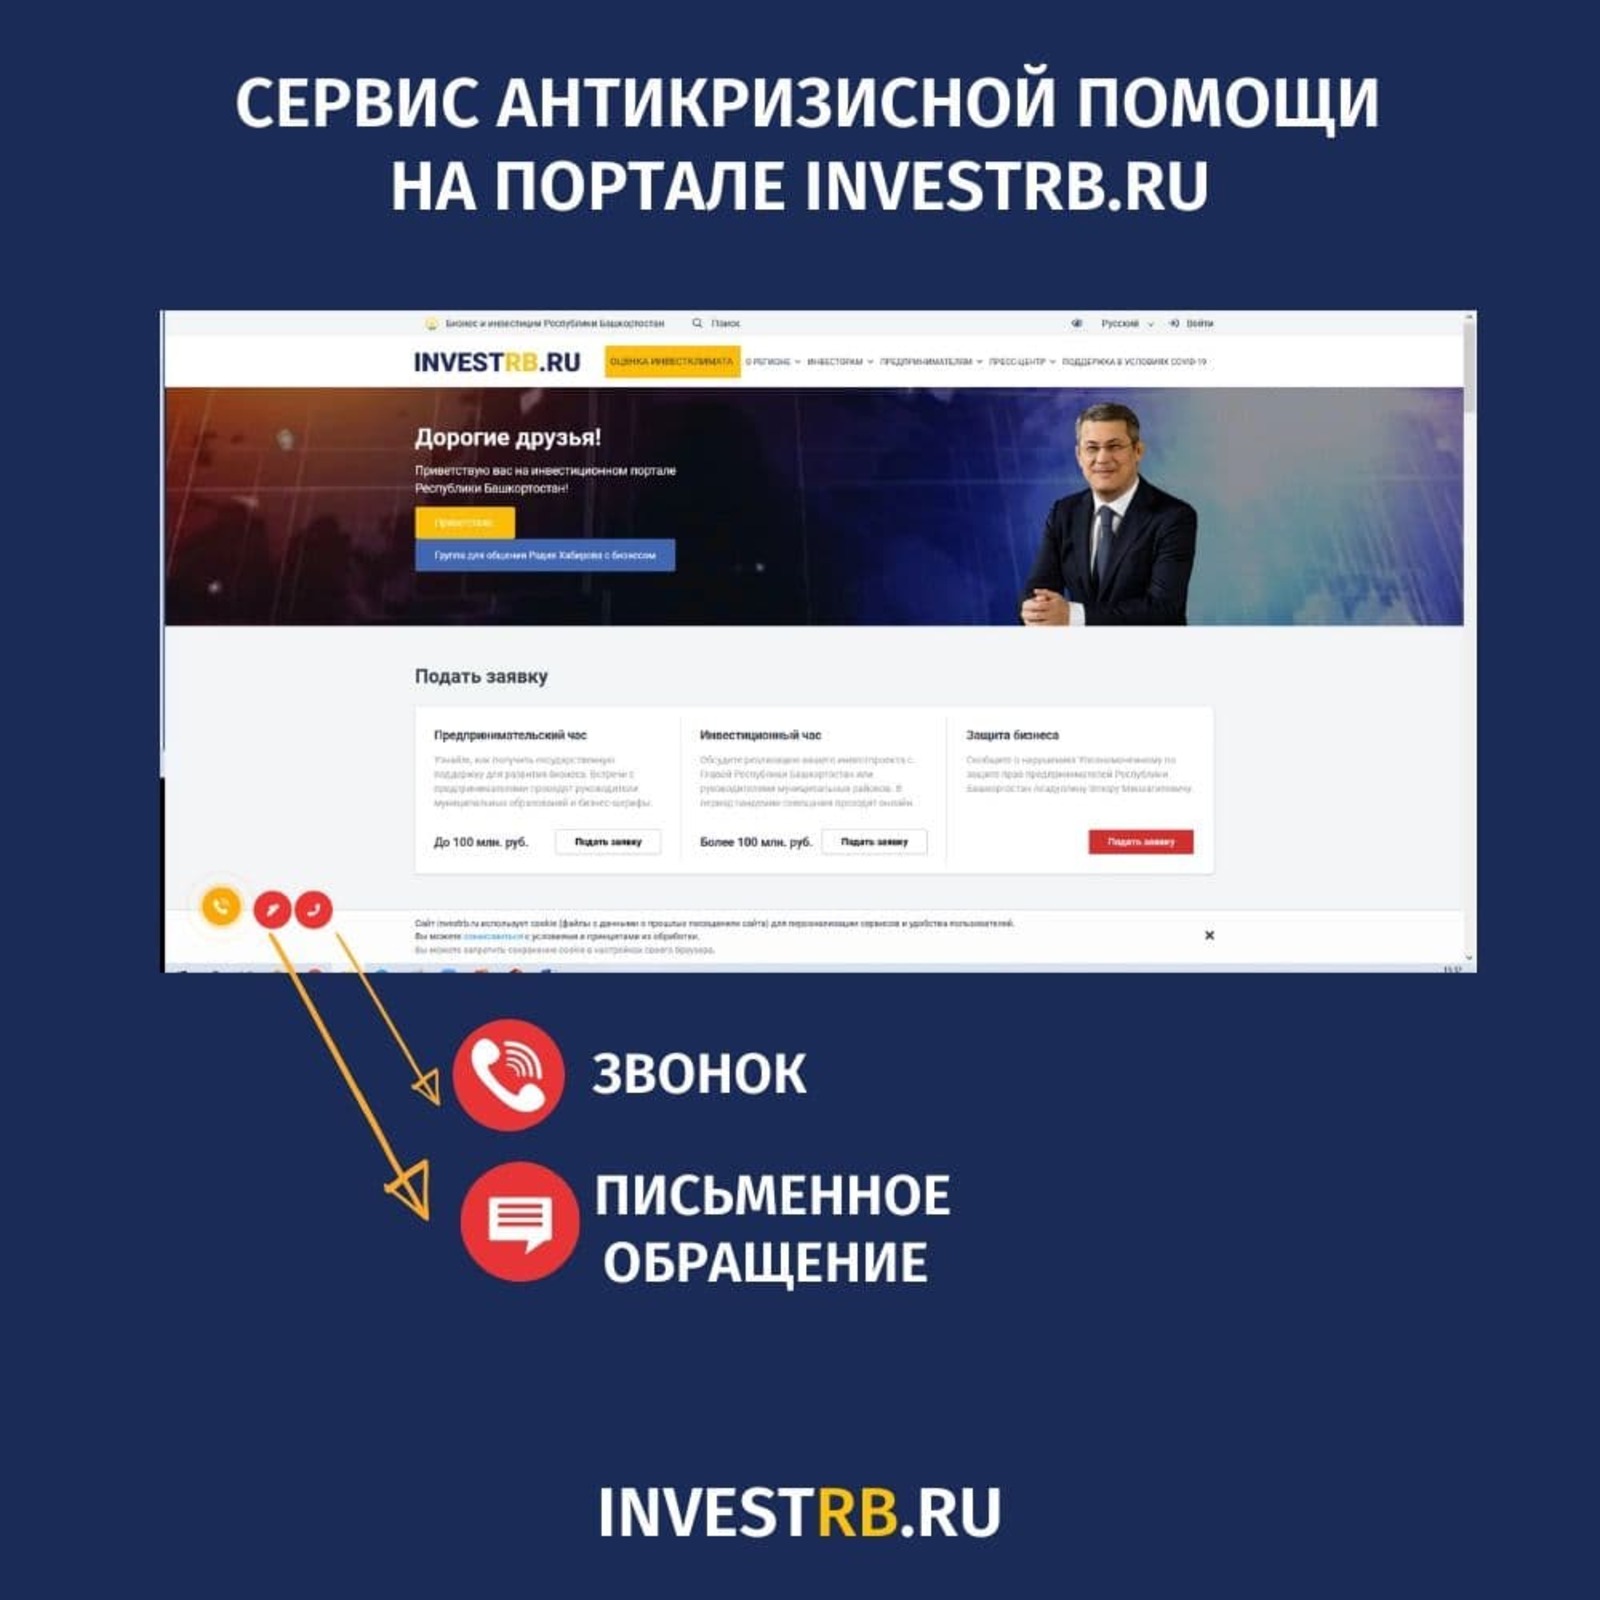 На портале INVESTRB.RU заработал сервис антикризисной помощи бизнесу